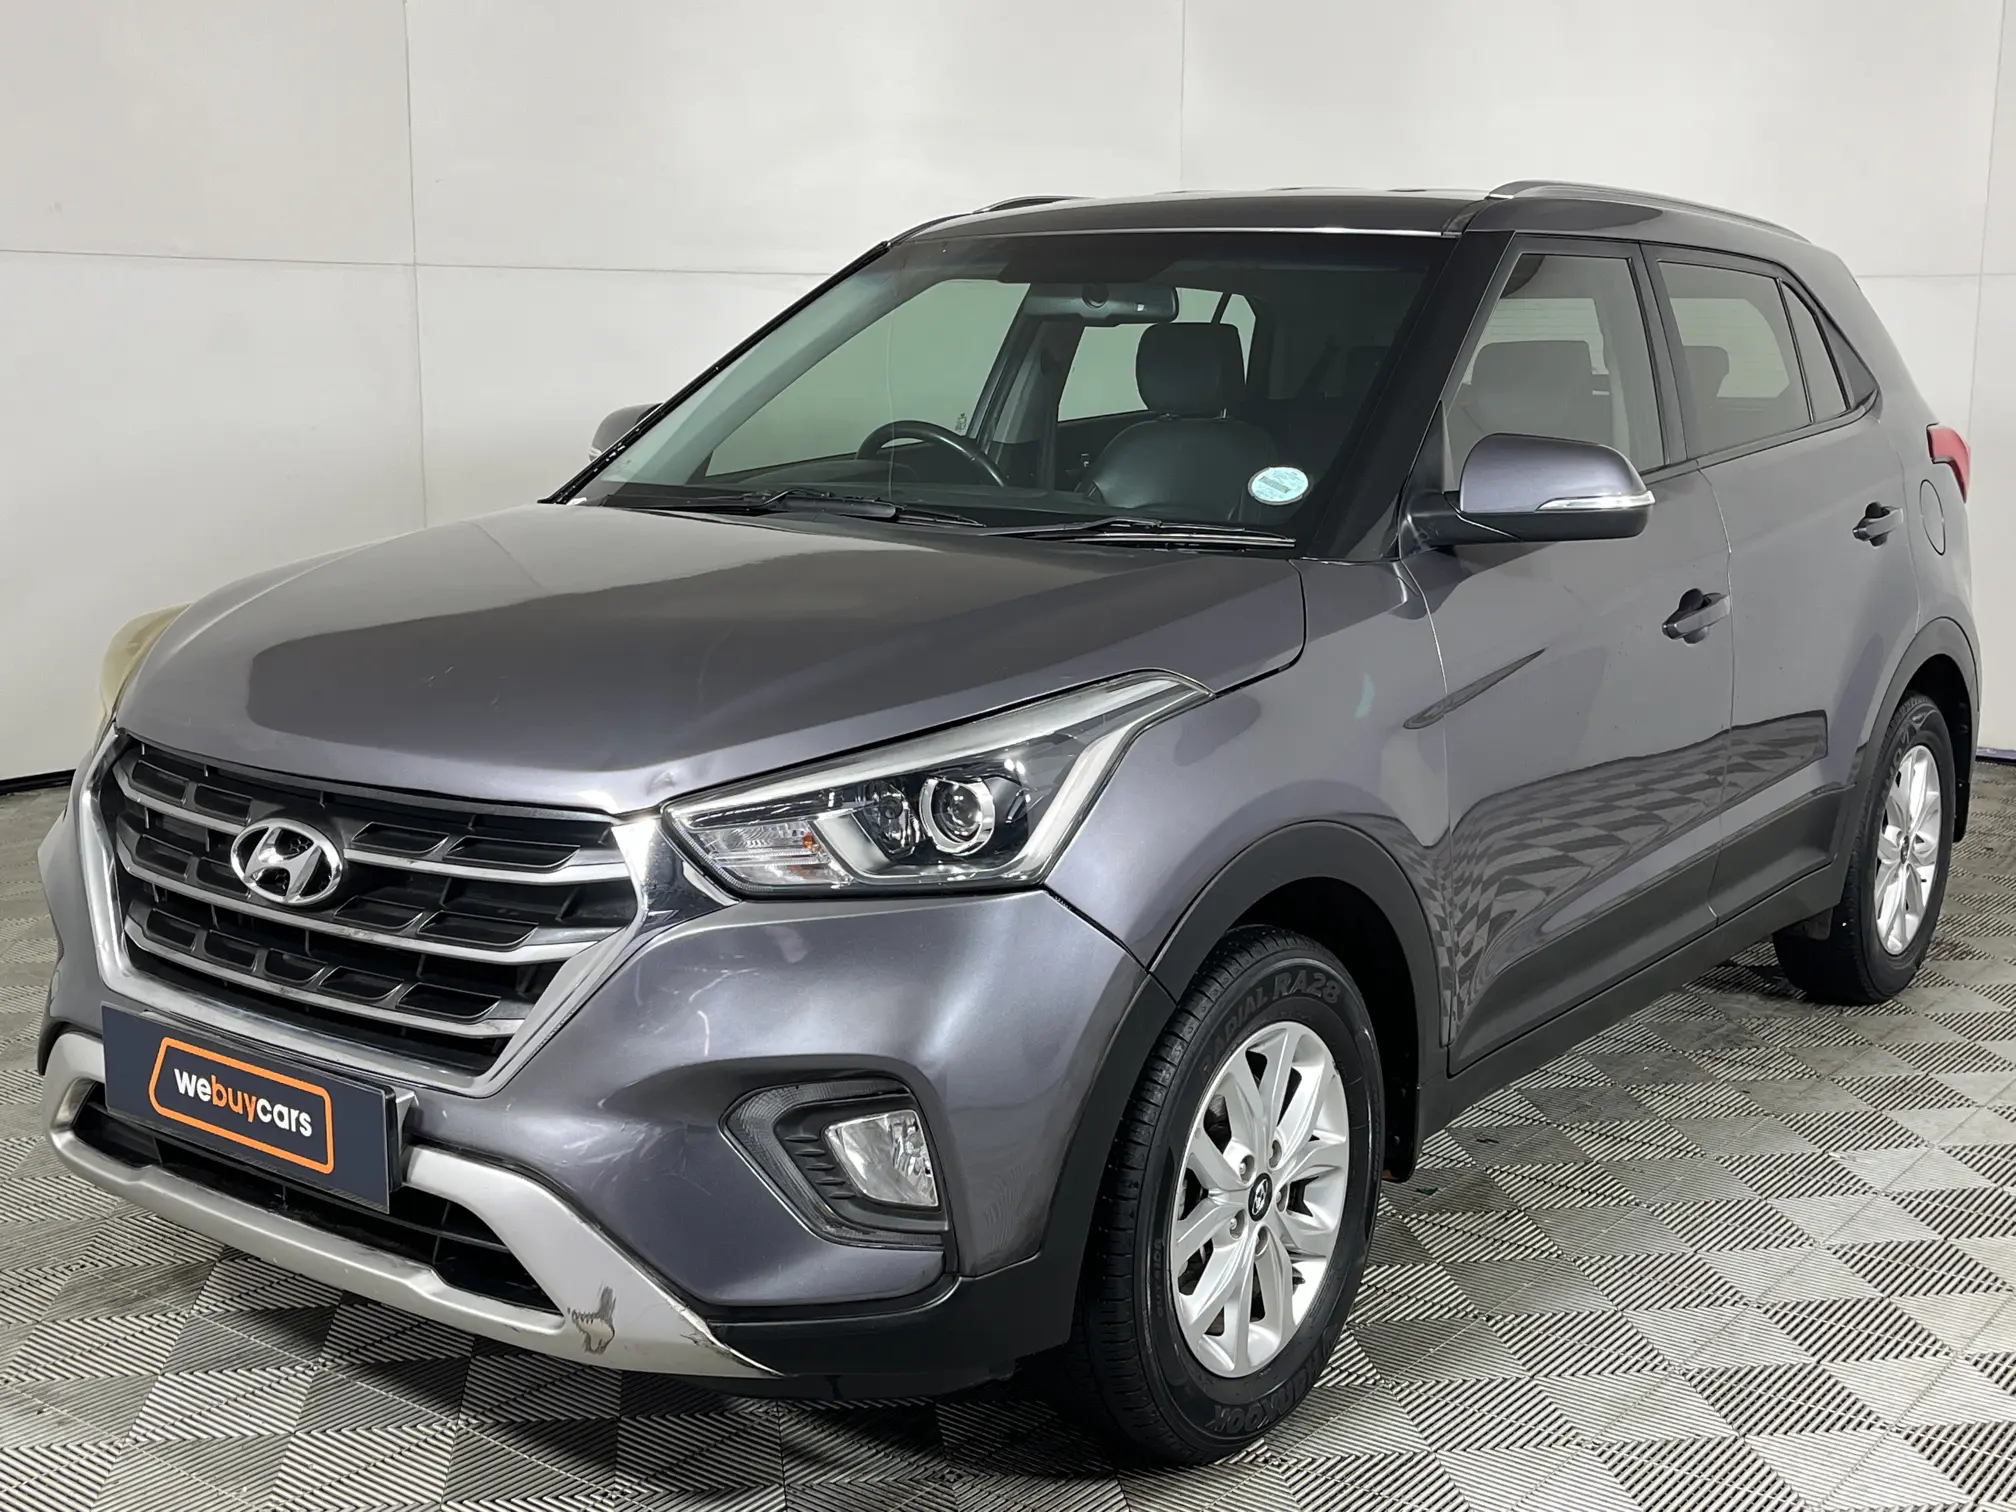 2019 Hyundai Creta 1.6 Executive Auto